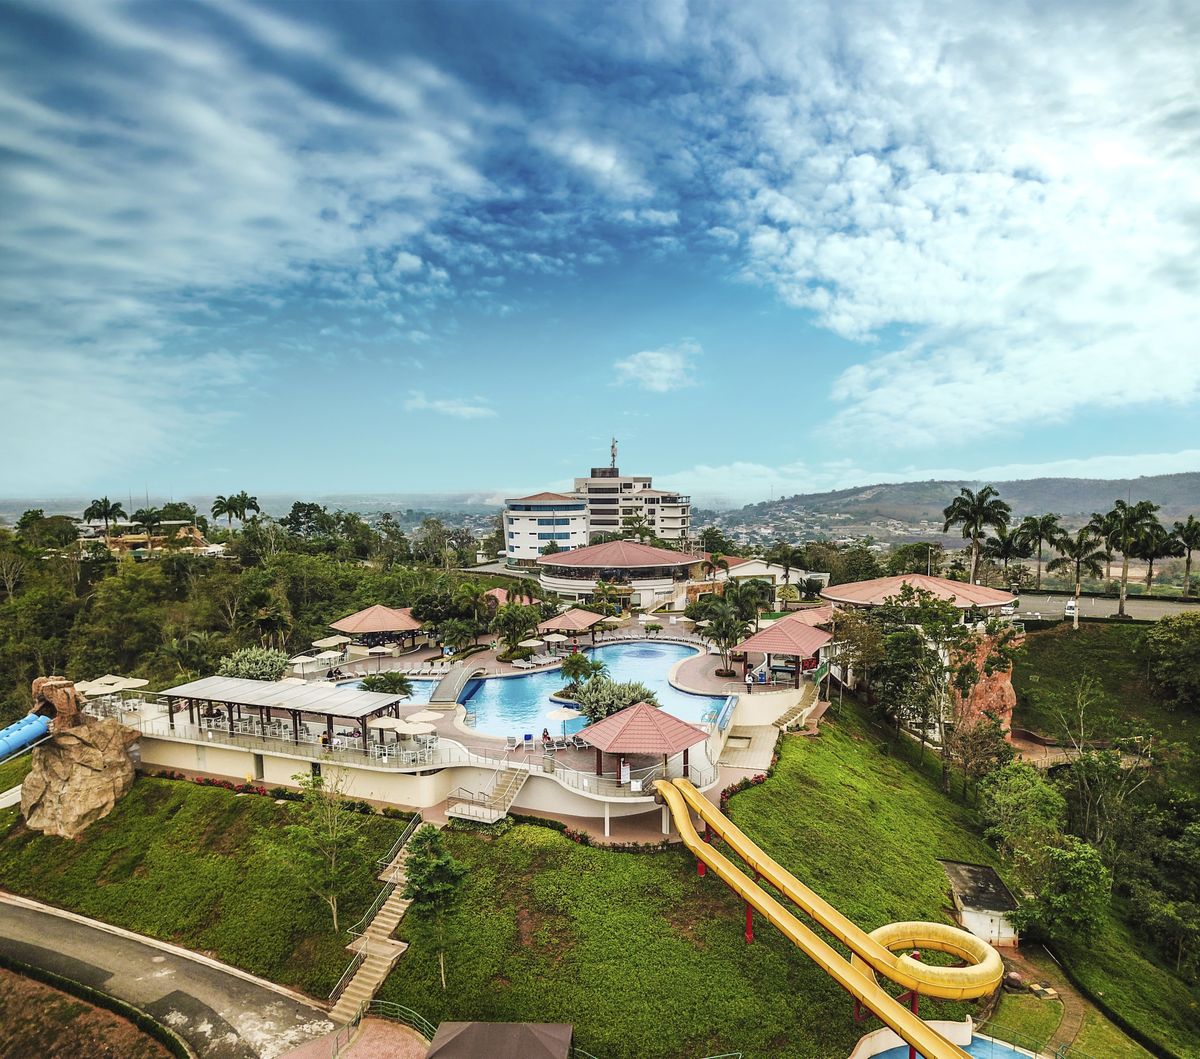 Hillary Resort está ubicado a solo 30 minutos de la ciudad de Machala